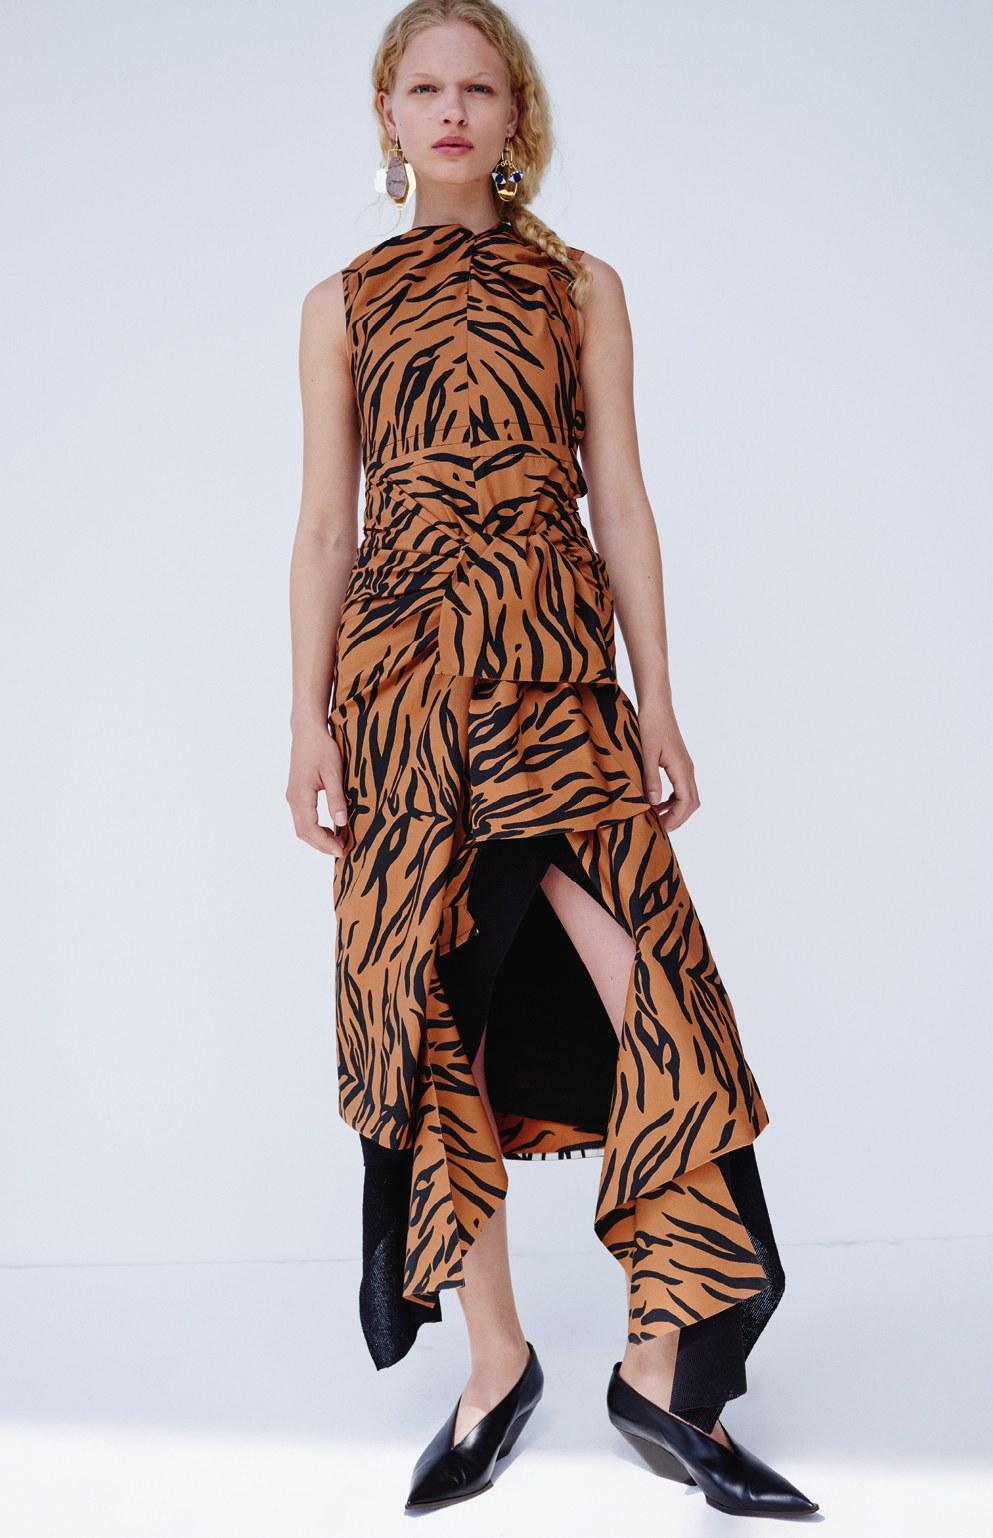 CELINE by PHOEBE PHILO Drapiertes Kleid mit Tigerprint und offenem Rücken - neu 2